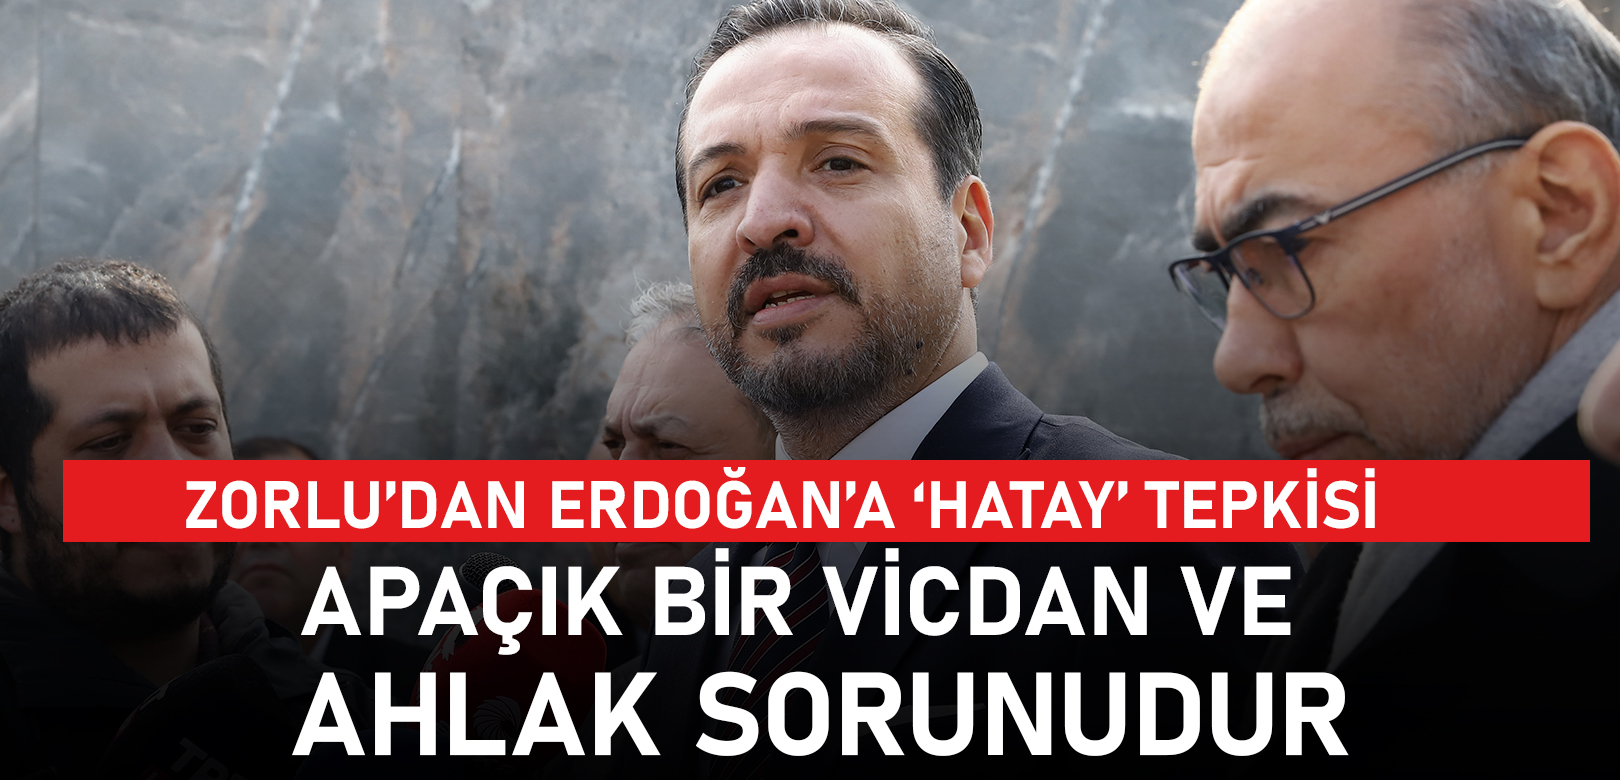 Zorlu’dan Erdoğan’a ‘Hatay’ tepkisi: Apaçık bir vicdan ve ahlak sorunudur